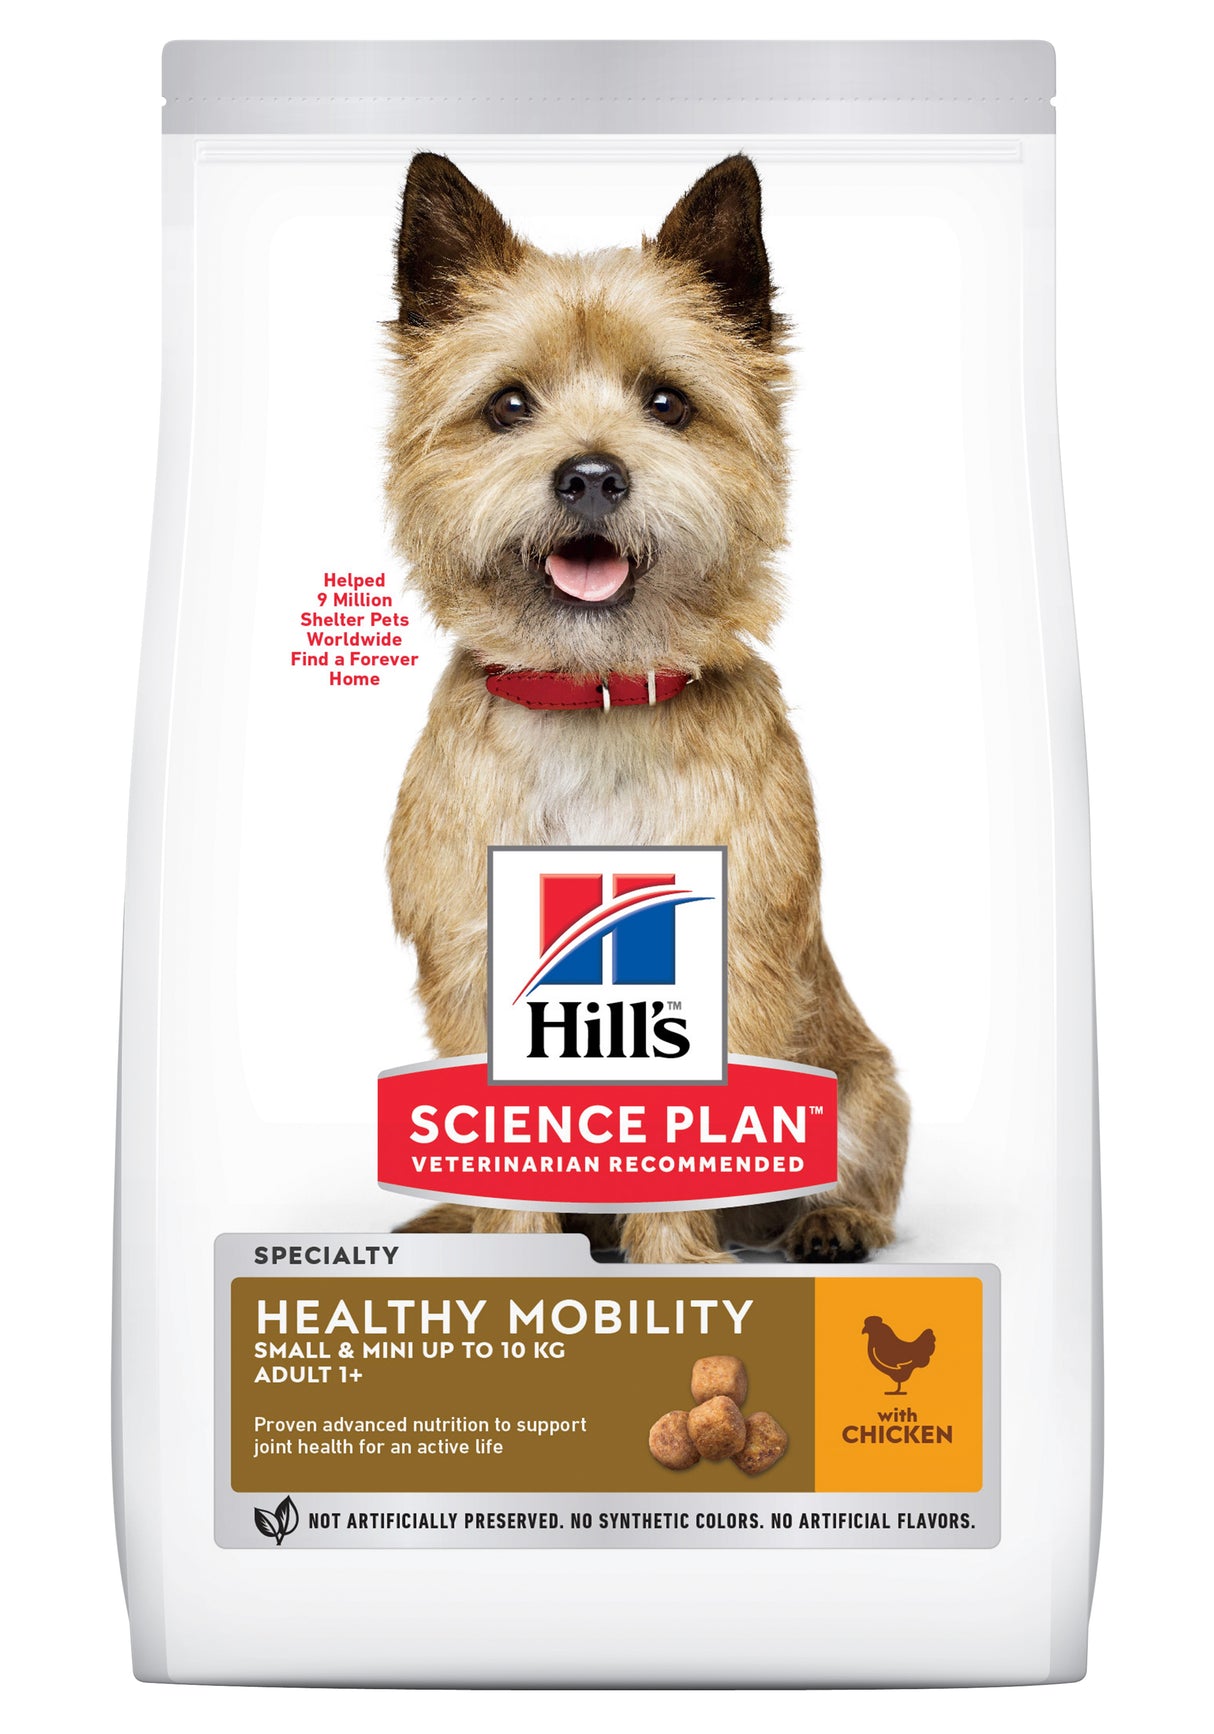 Hill's Science Plan Small & Mini Voksen hundefoder med sund mobilitet vil blive erstattet med Hills sund mobilitet tørfoder med fiskeolie til voksne små/mini hunde fra mærket Hills Science Plan.